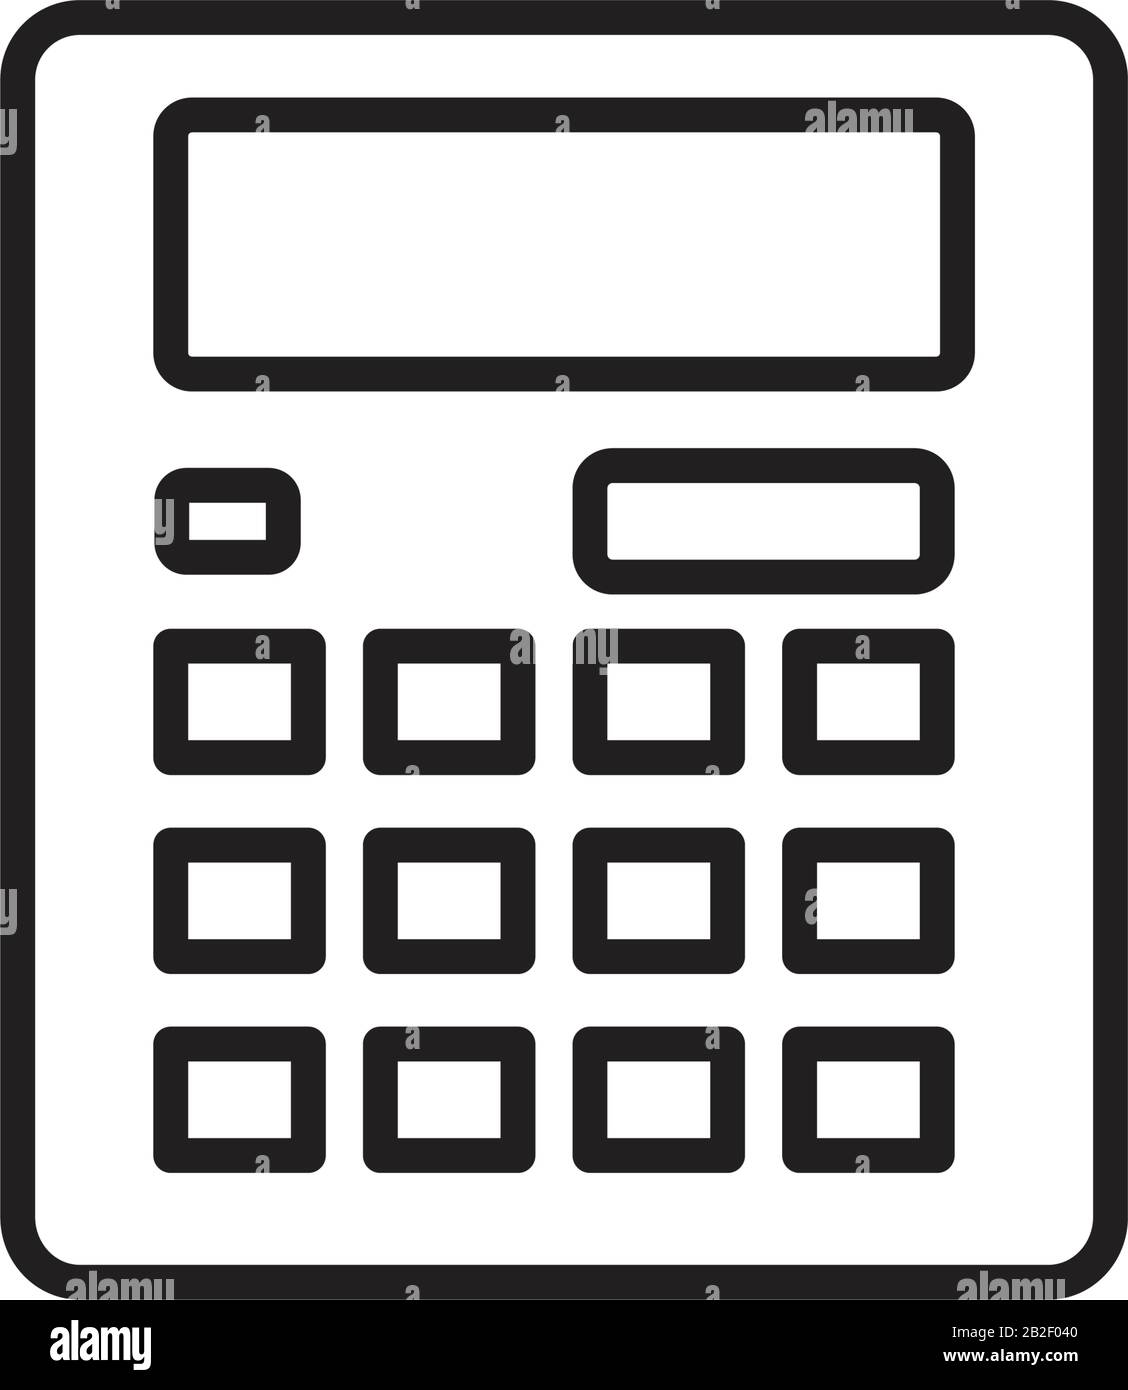 Icona calcolatrice colore nero modificabile. Icona calcolatrice immagine vettoriale piatta per la progettazione grafica e web. Illustrazione Vettoriale